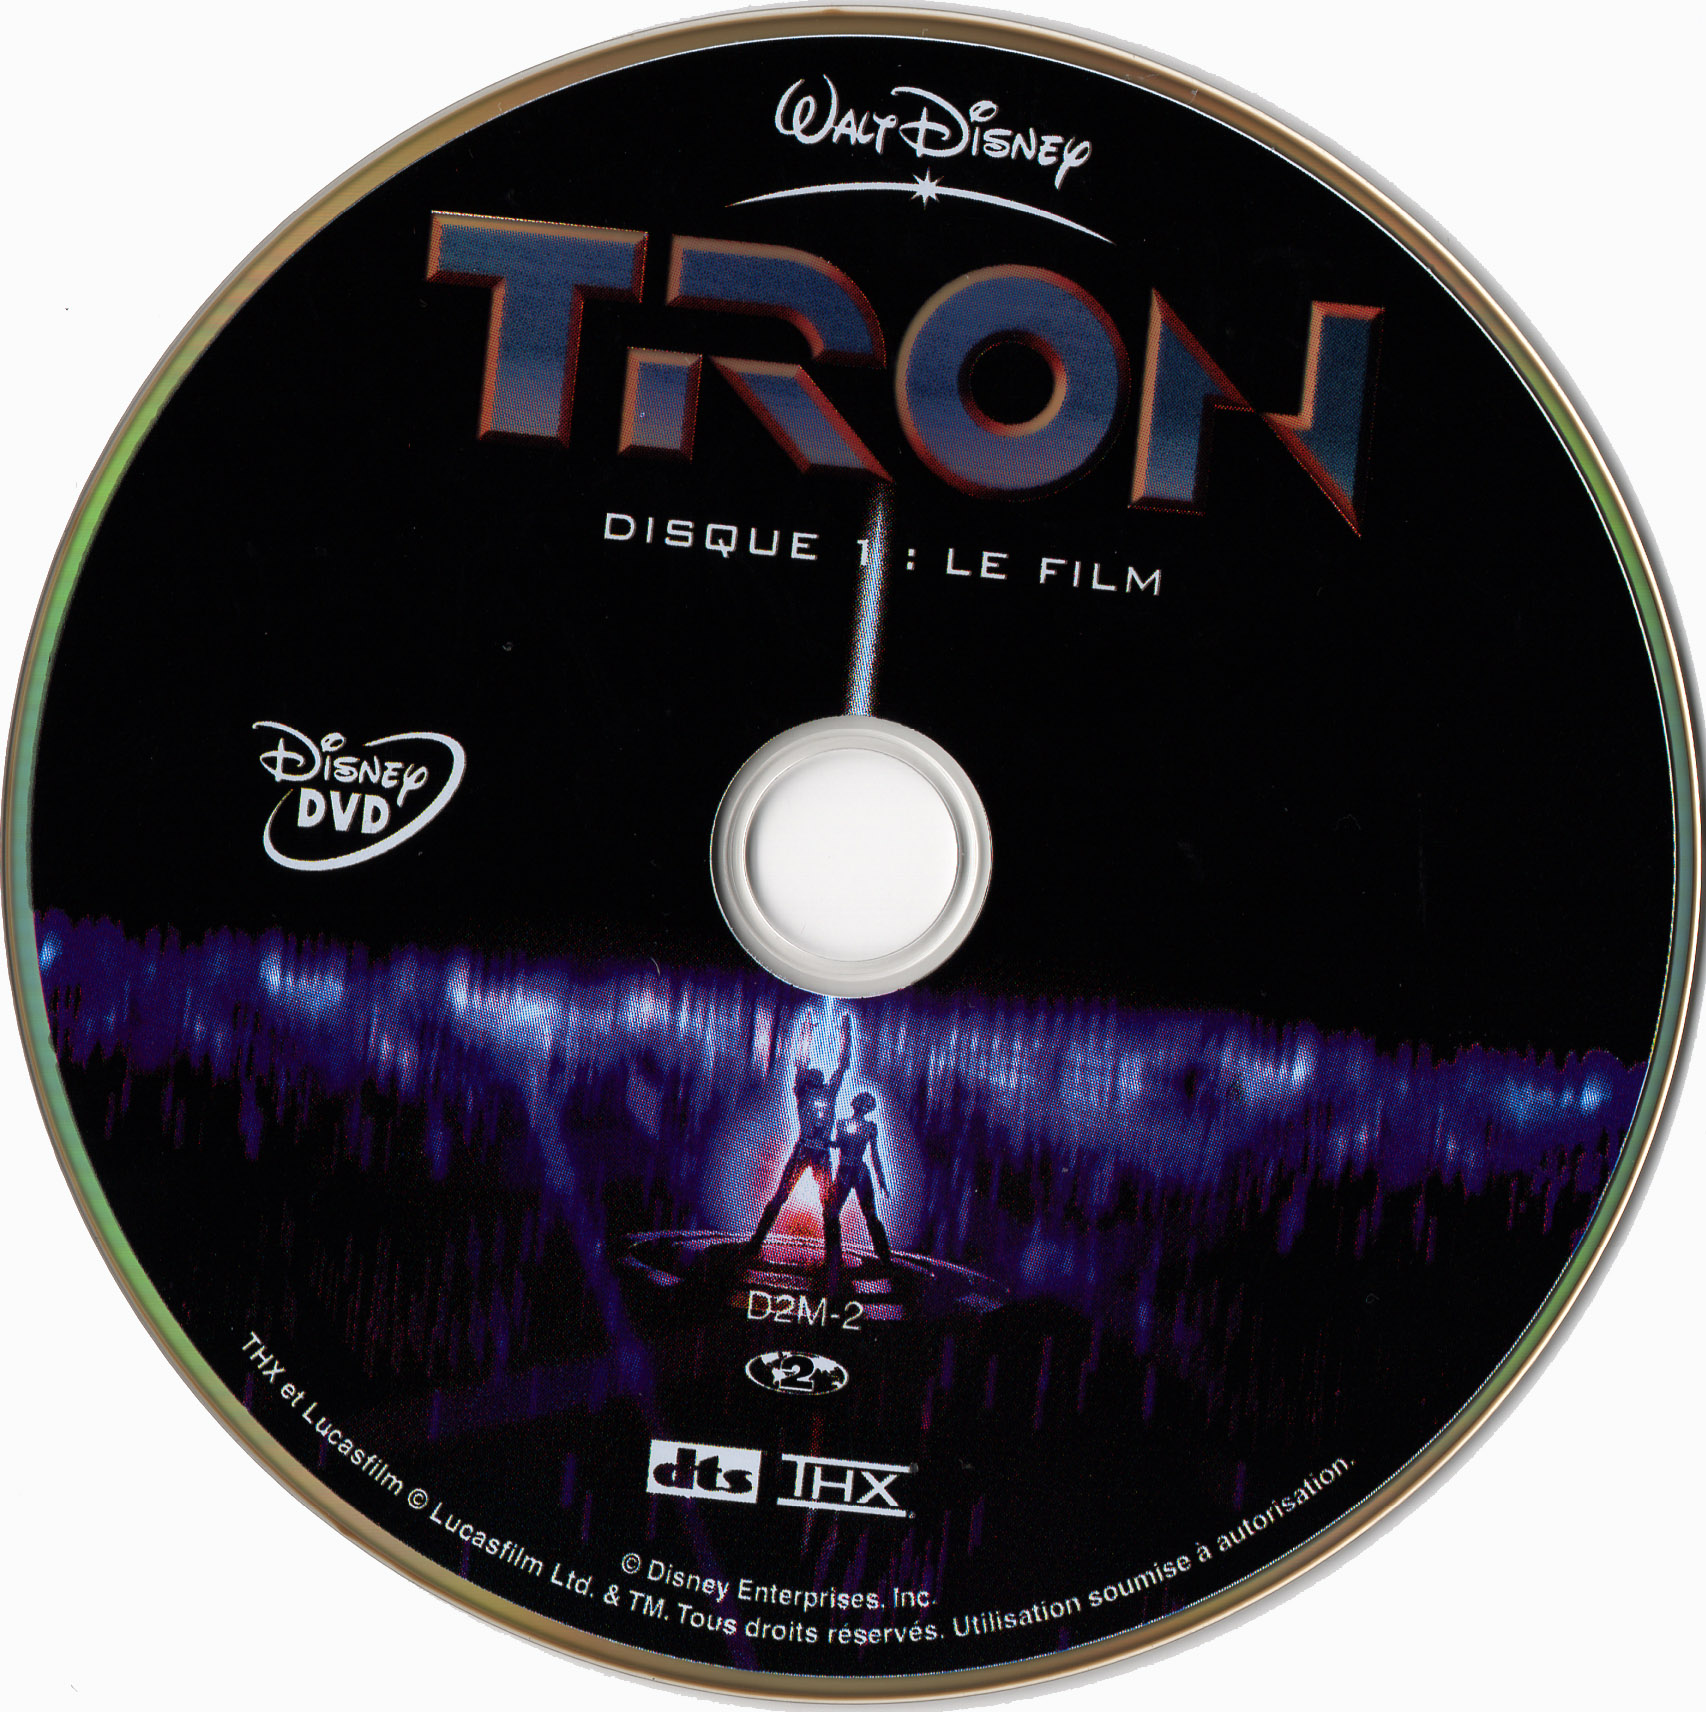 Tron DISC 1